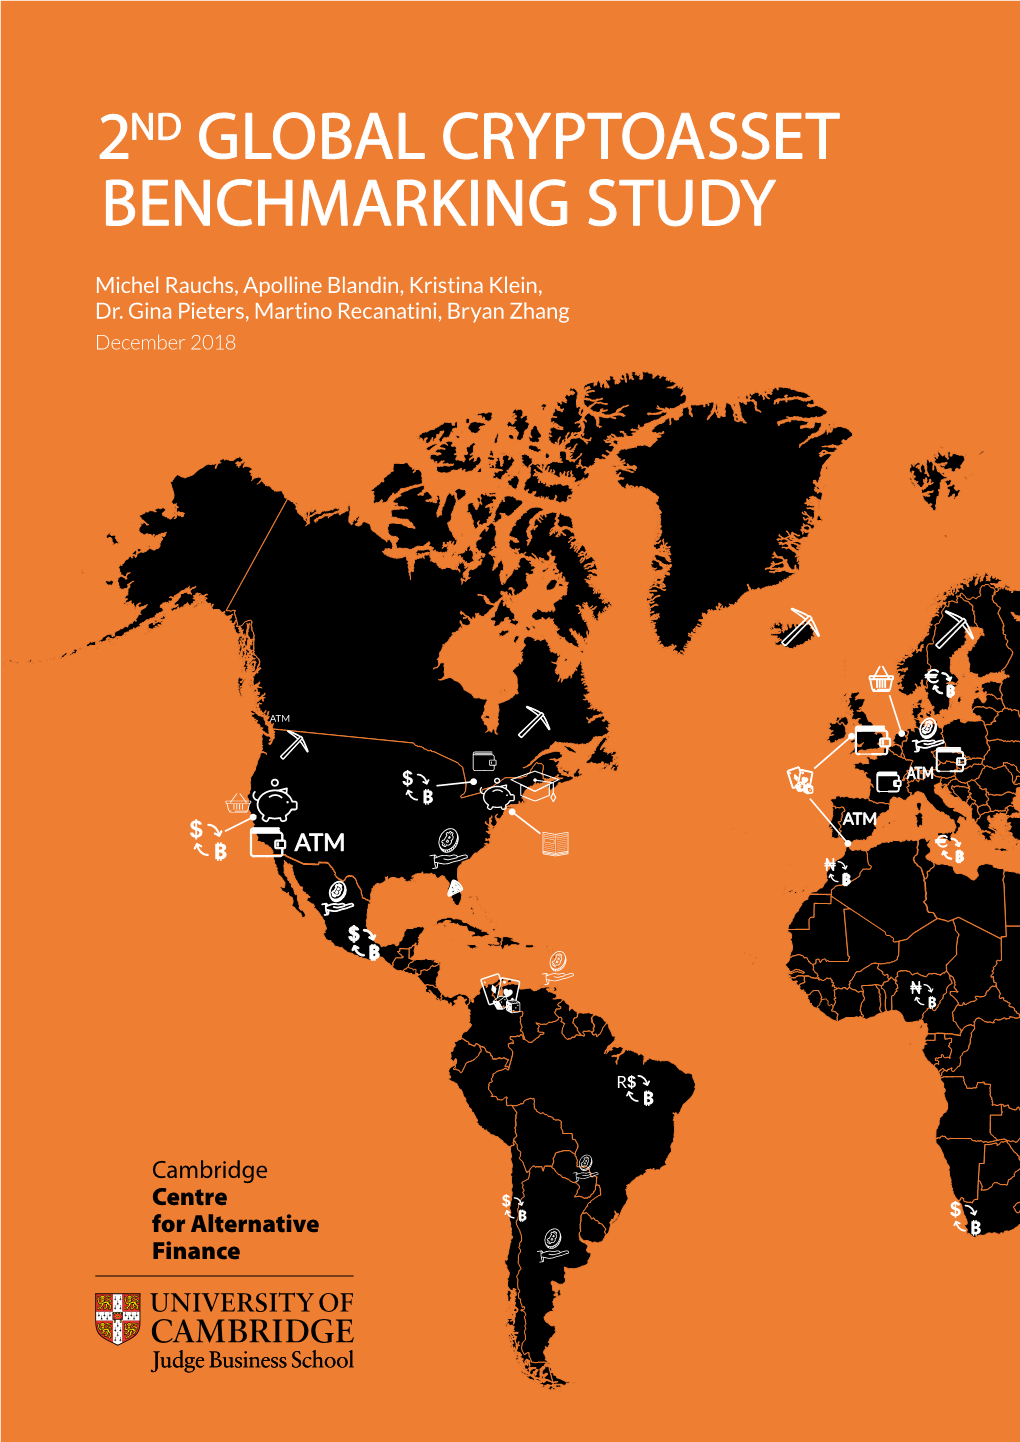 2Nd Global Cryptoasset Benchmarking Study